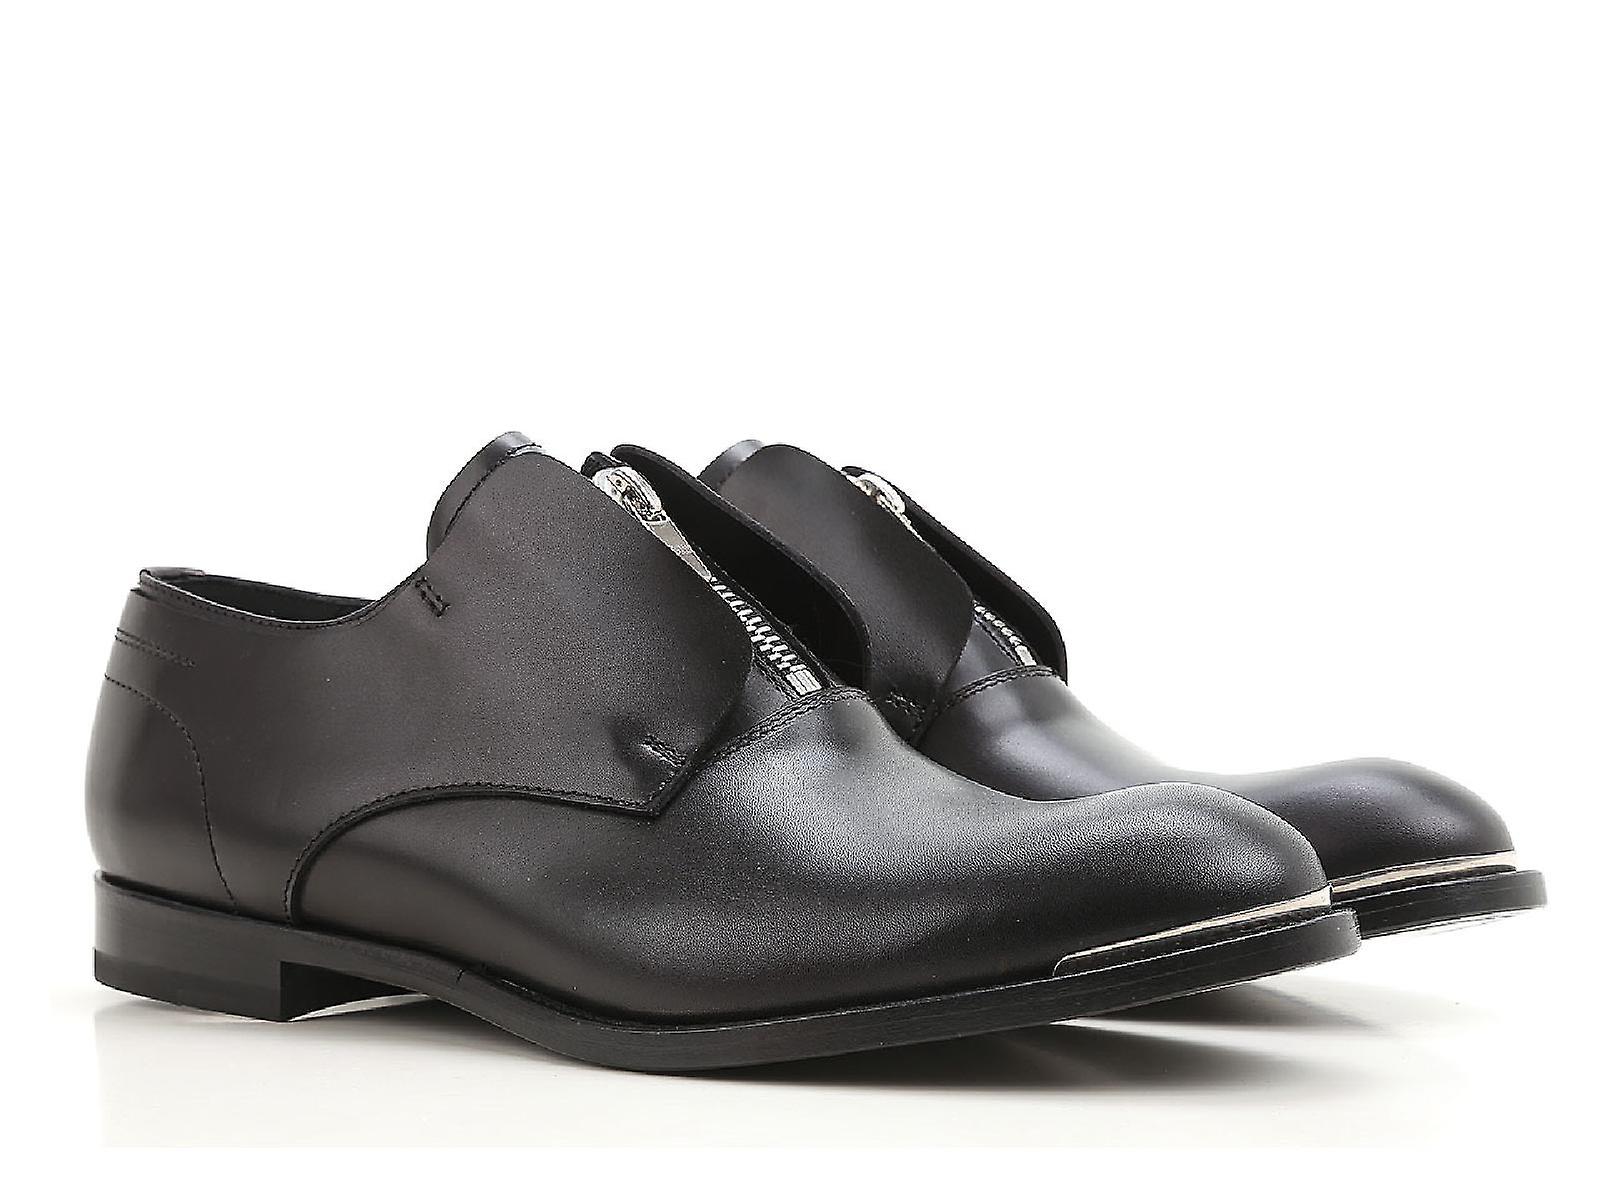 Alexander Mcqueen Men S Zip Loafers In Black Calf Leather - Shoe ...